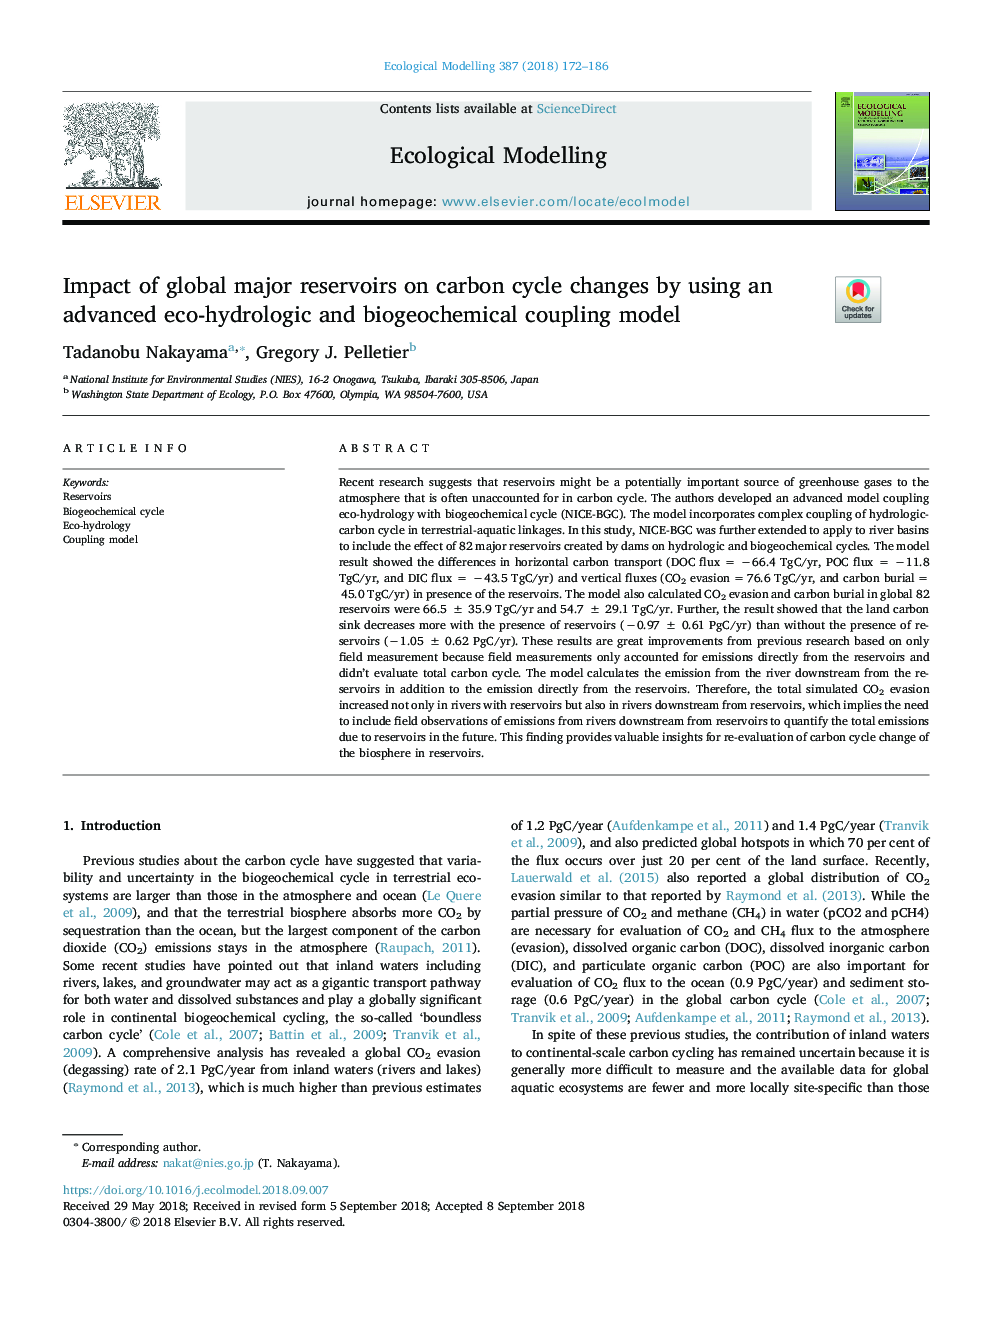 تاثیر مخازن اصلی جهانی بر تغییرات چرخه کربن با استفاده از مدل سازگار با محیط زیست هیدرولوژیکی و بیوگرافی شیمیایی پیشرفته